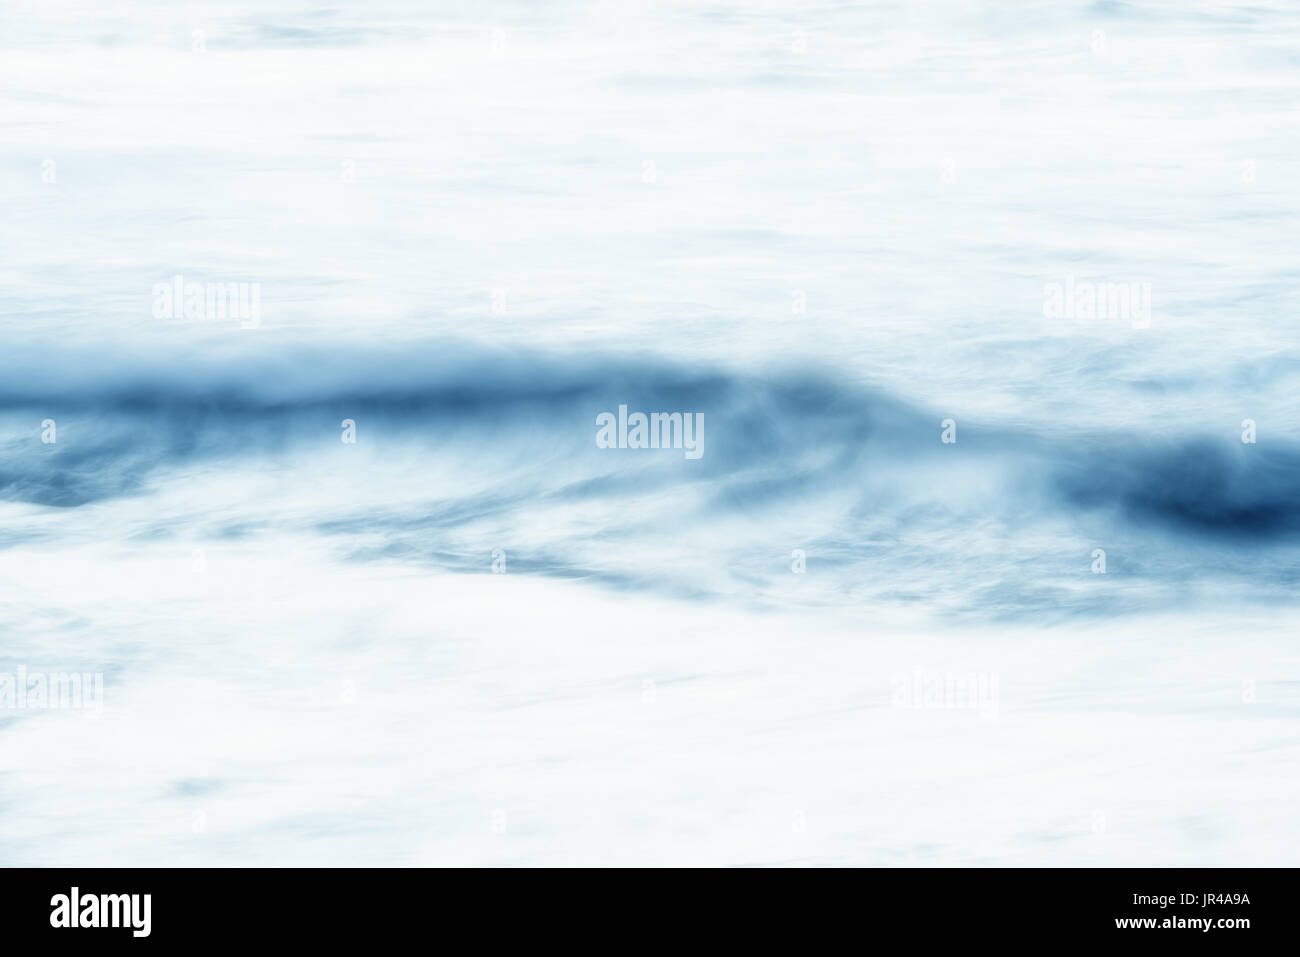 Abstrait, de l'eau trouble, high key image texture de fond. Banque D'Images